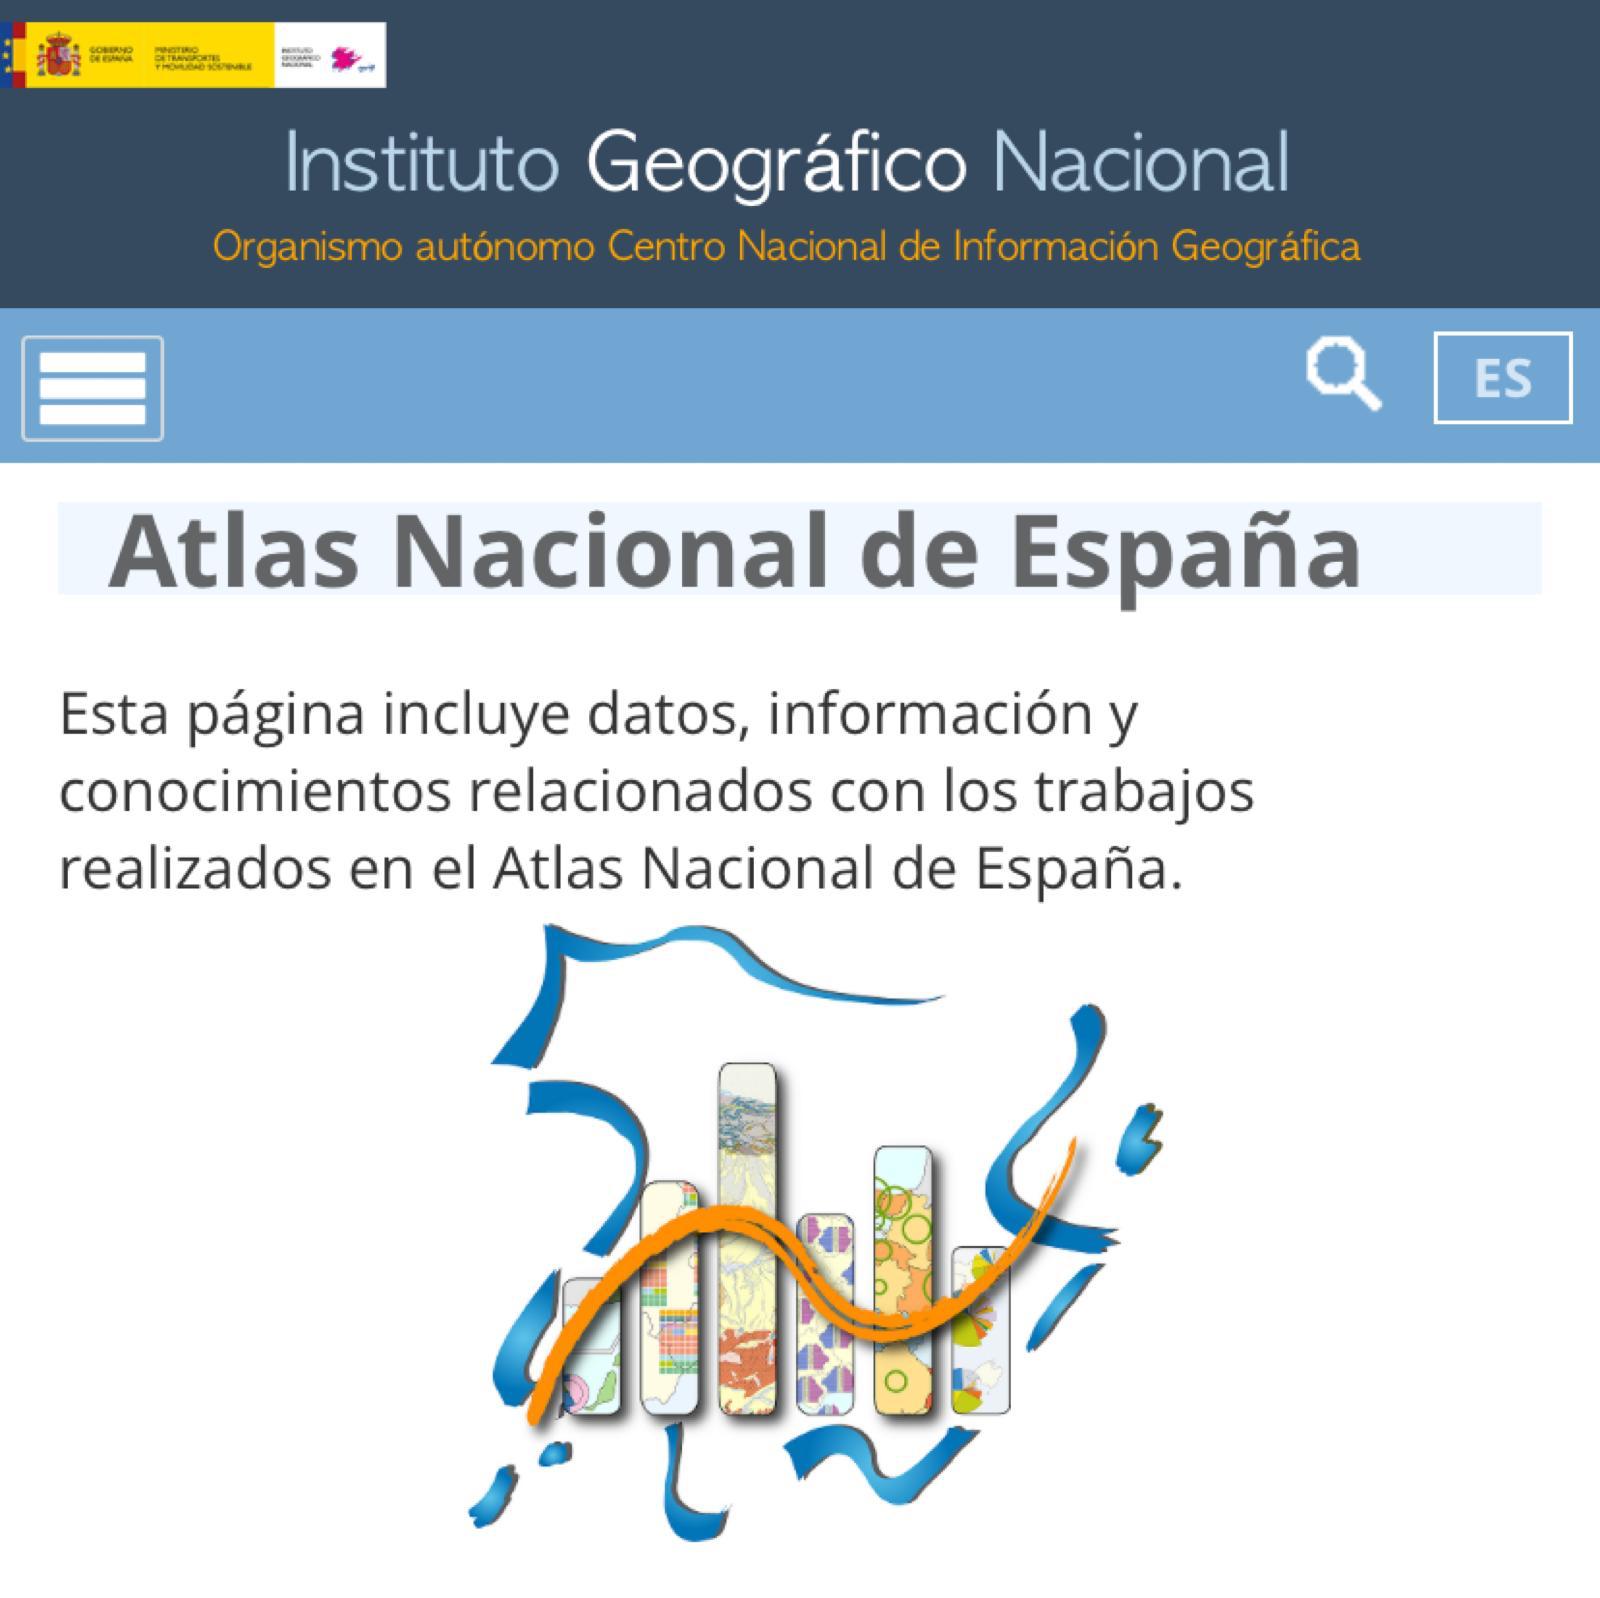 Colaboración de Manuel de la Calle y Carmen Mínguez en la redacción y elaboración de las hojas de sección de Turismo de la nueva edición del Atlas Nacional de España